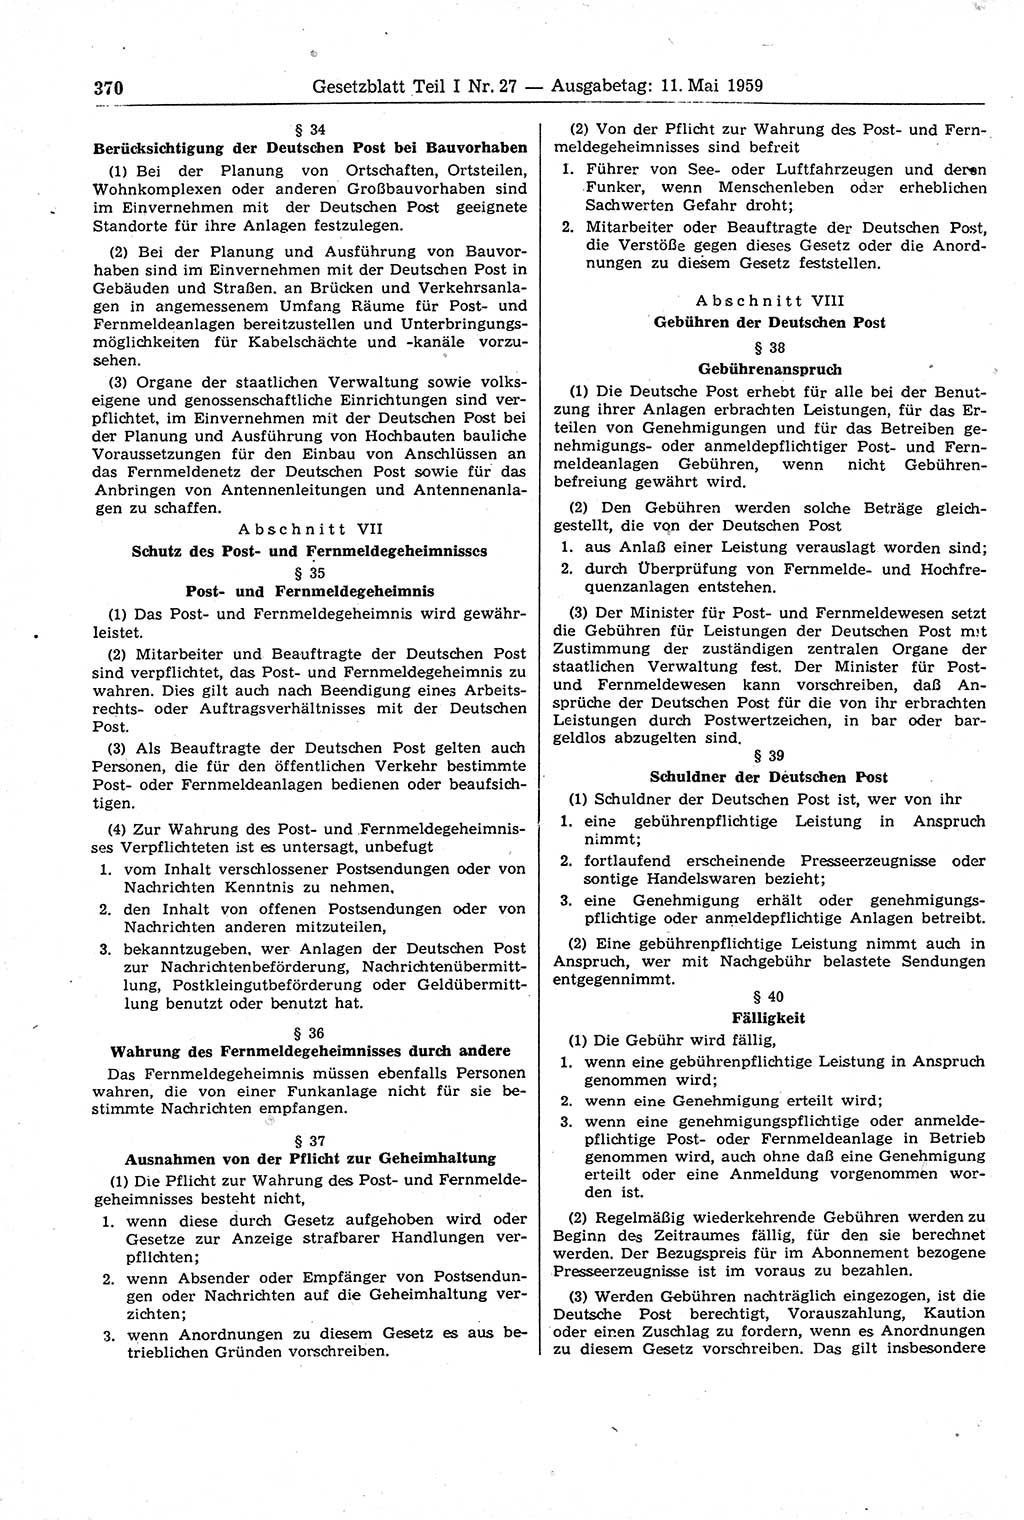 Gesetzblatt (GBl.) der Deutschen Demokratischen Republik (DDR) Teil Ⅰ 1959, Seite 370 (GBl. DDR Ⅰ 1959, S. 370)